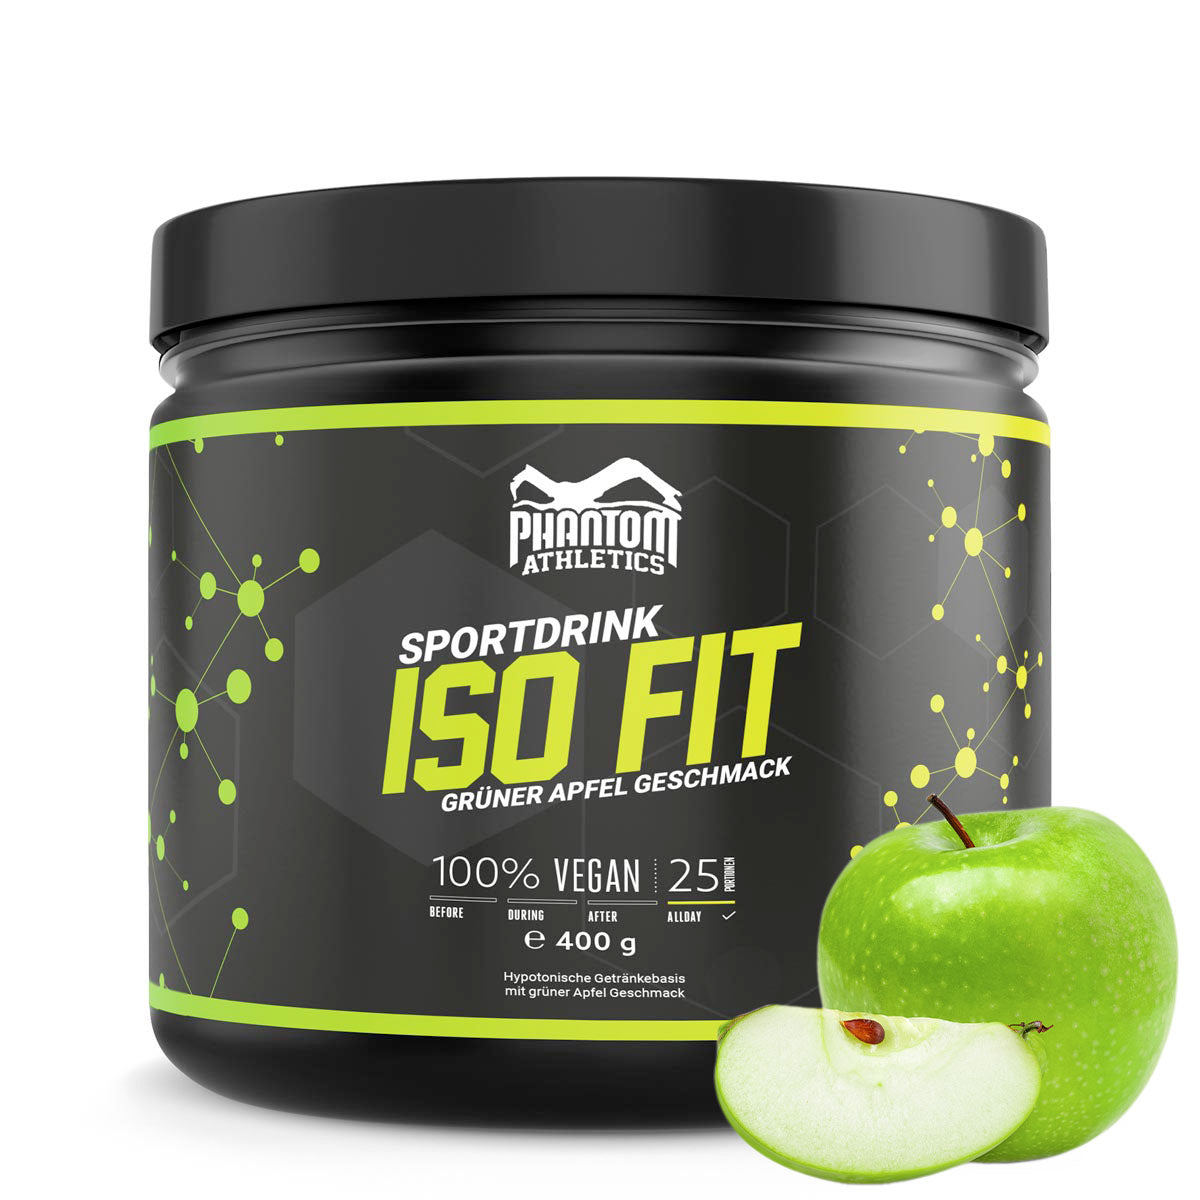 Phantom ISO FIT maisto papildas suteikia jums viską, ko reikia kovos menų treniruotėms. Dabar su skaniu žalių obuolių skoniu.